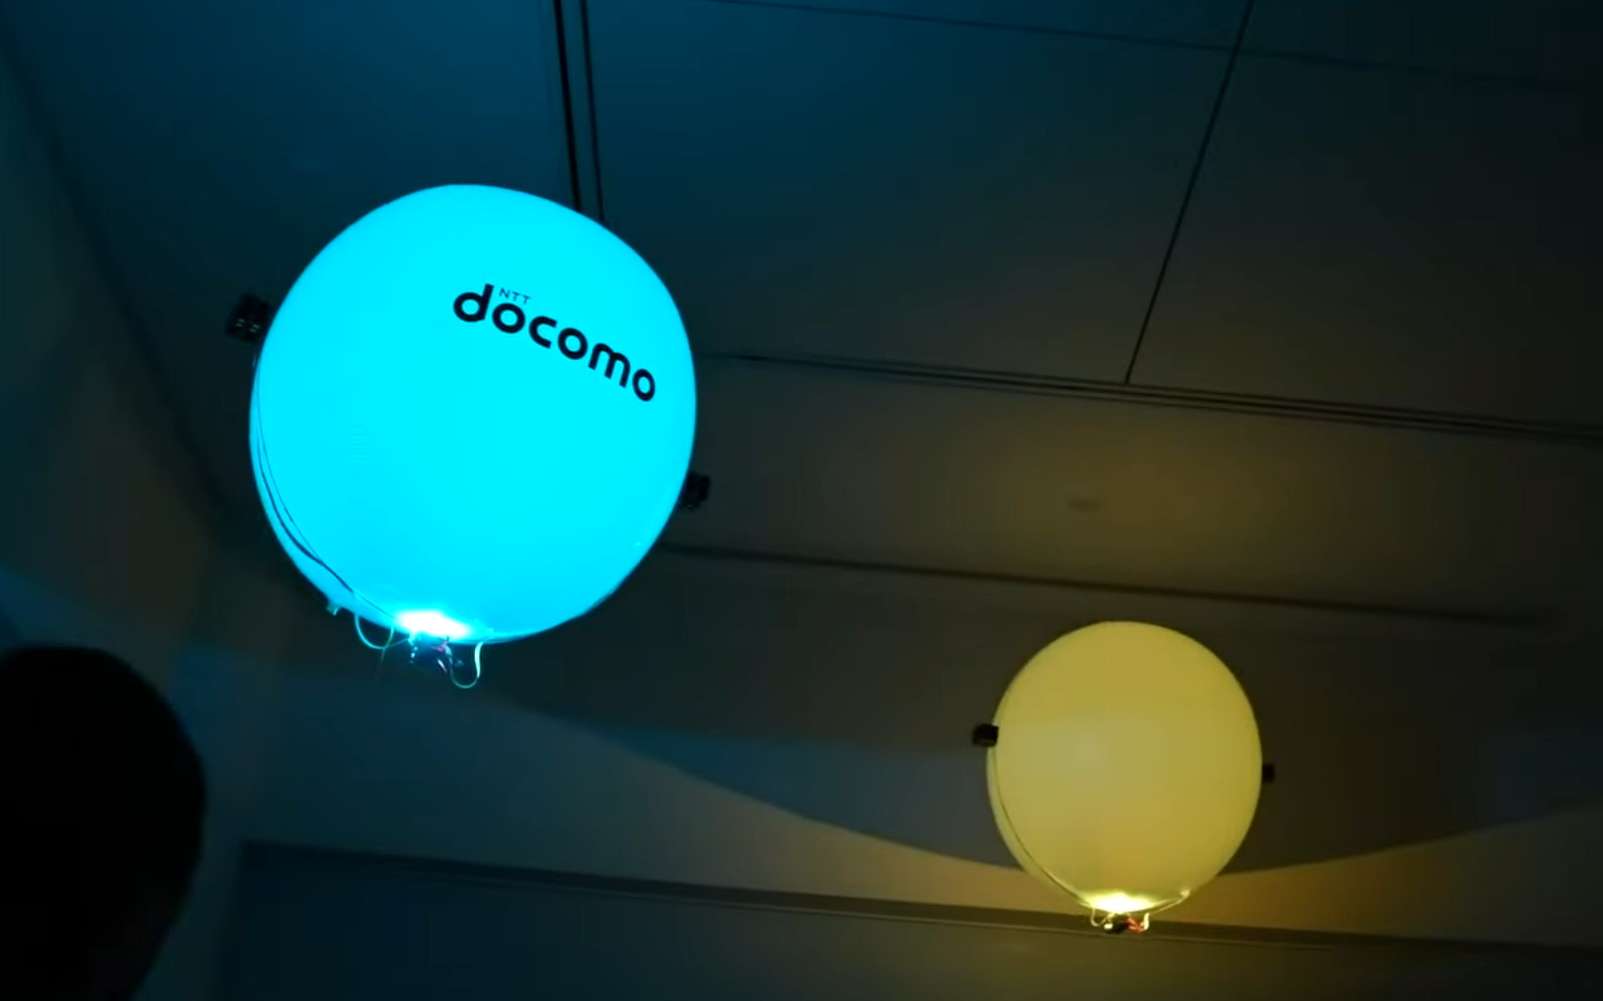 Ce drone est soulevé par un ballon d’hélium et propulsé par des ultrasons. © NTT Docomo